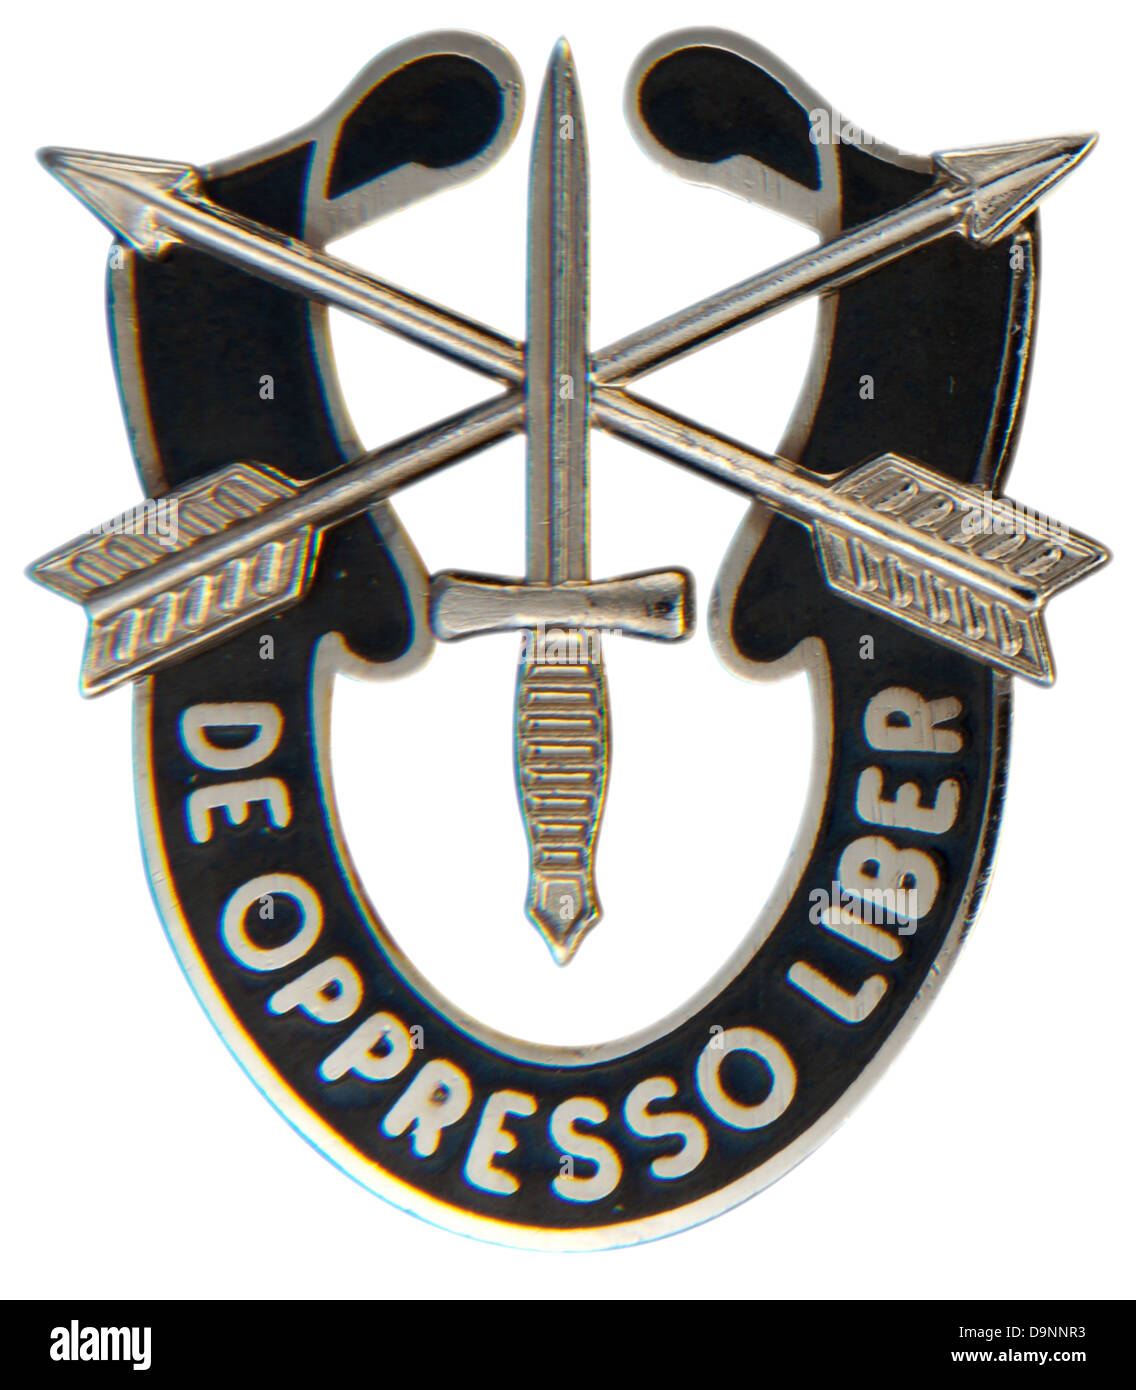 Décoration de l'US Army Special Forces unité distinctive insignia Banque D'Images